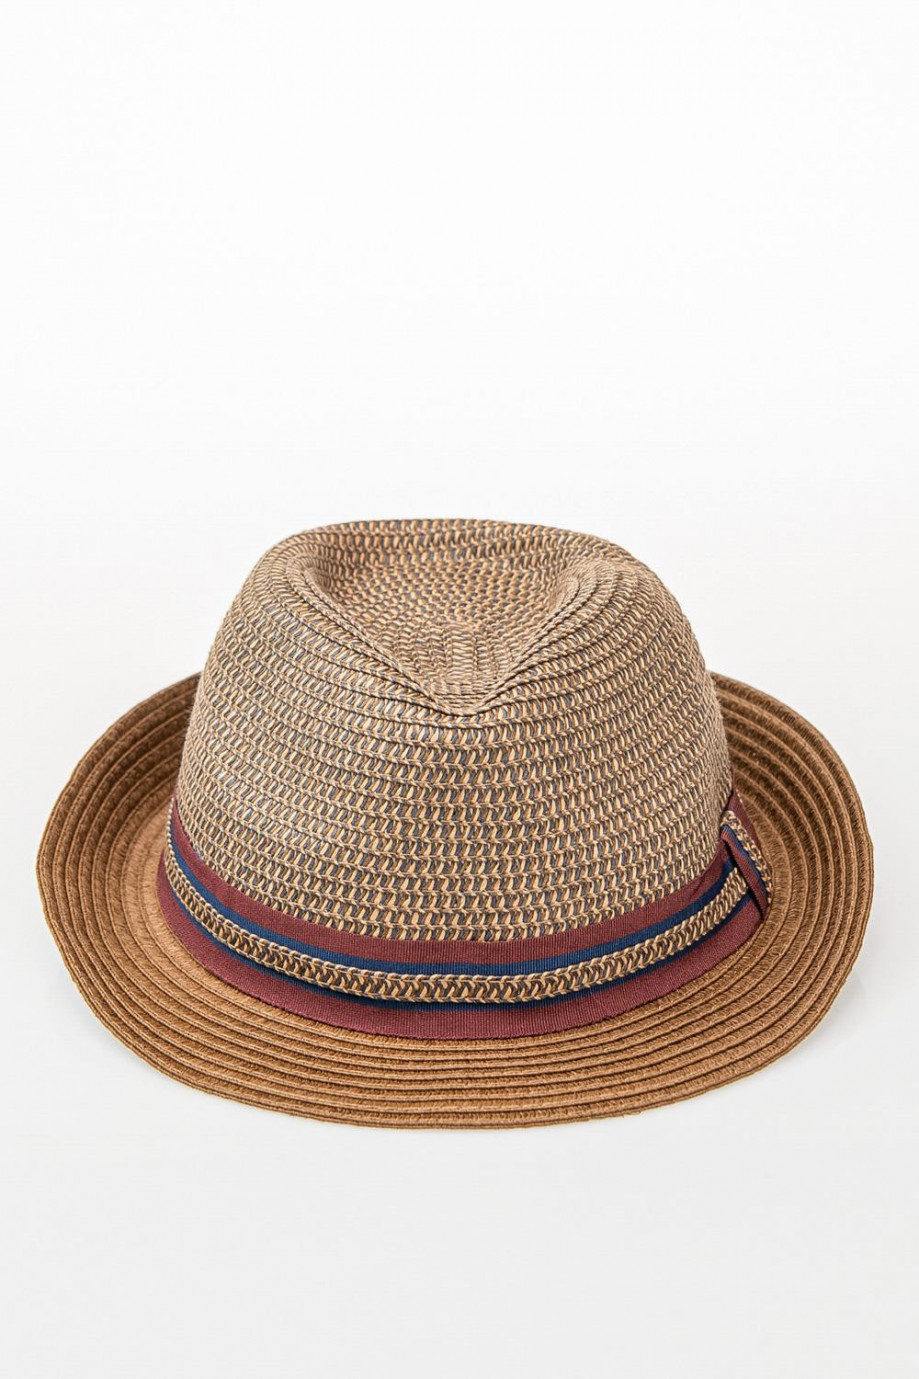 Sombrero tejido con cinta decorativa